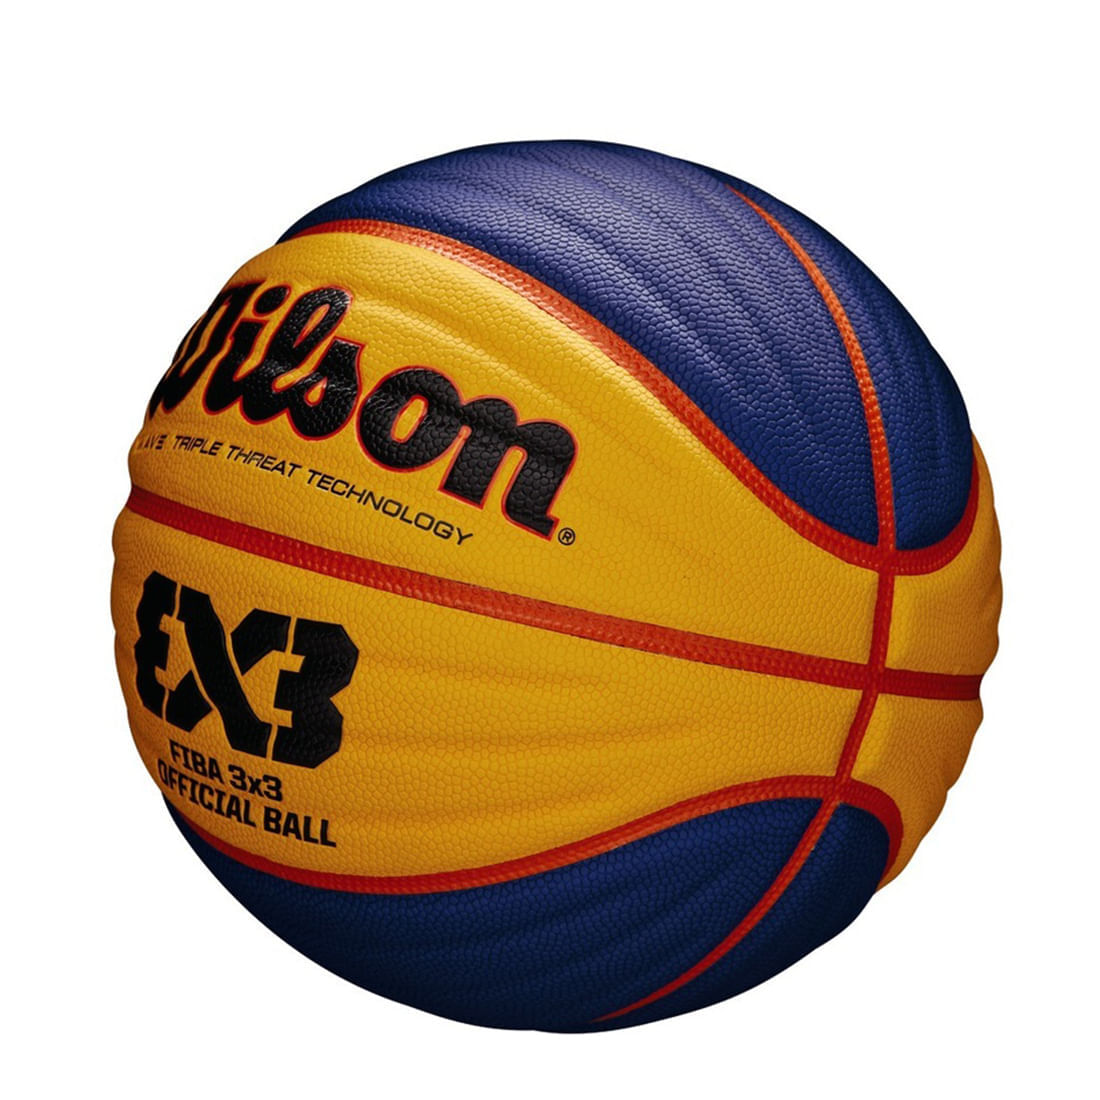 Balon Baloncesto Basketball Wilson Oficial Fiba 3x3 Wave - Agaval